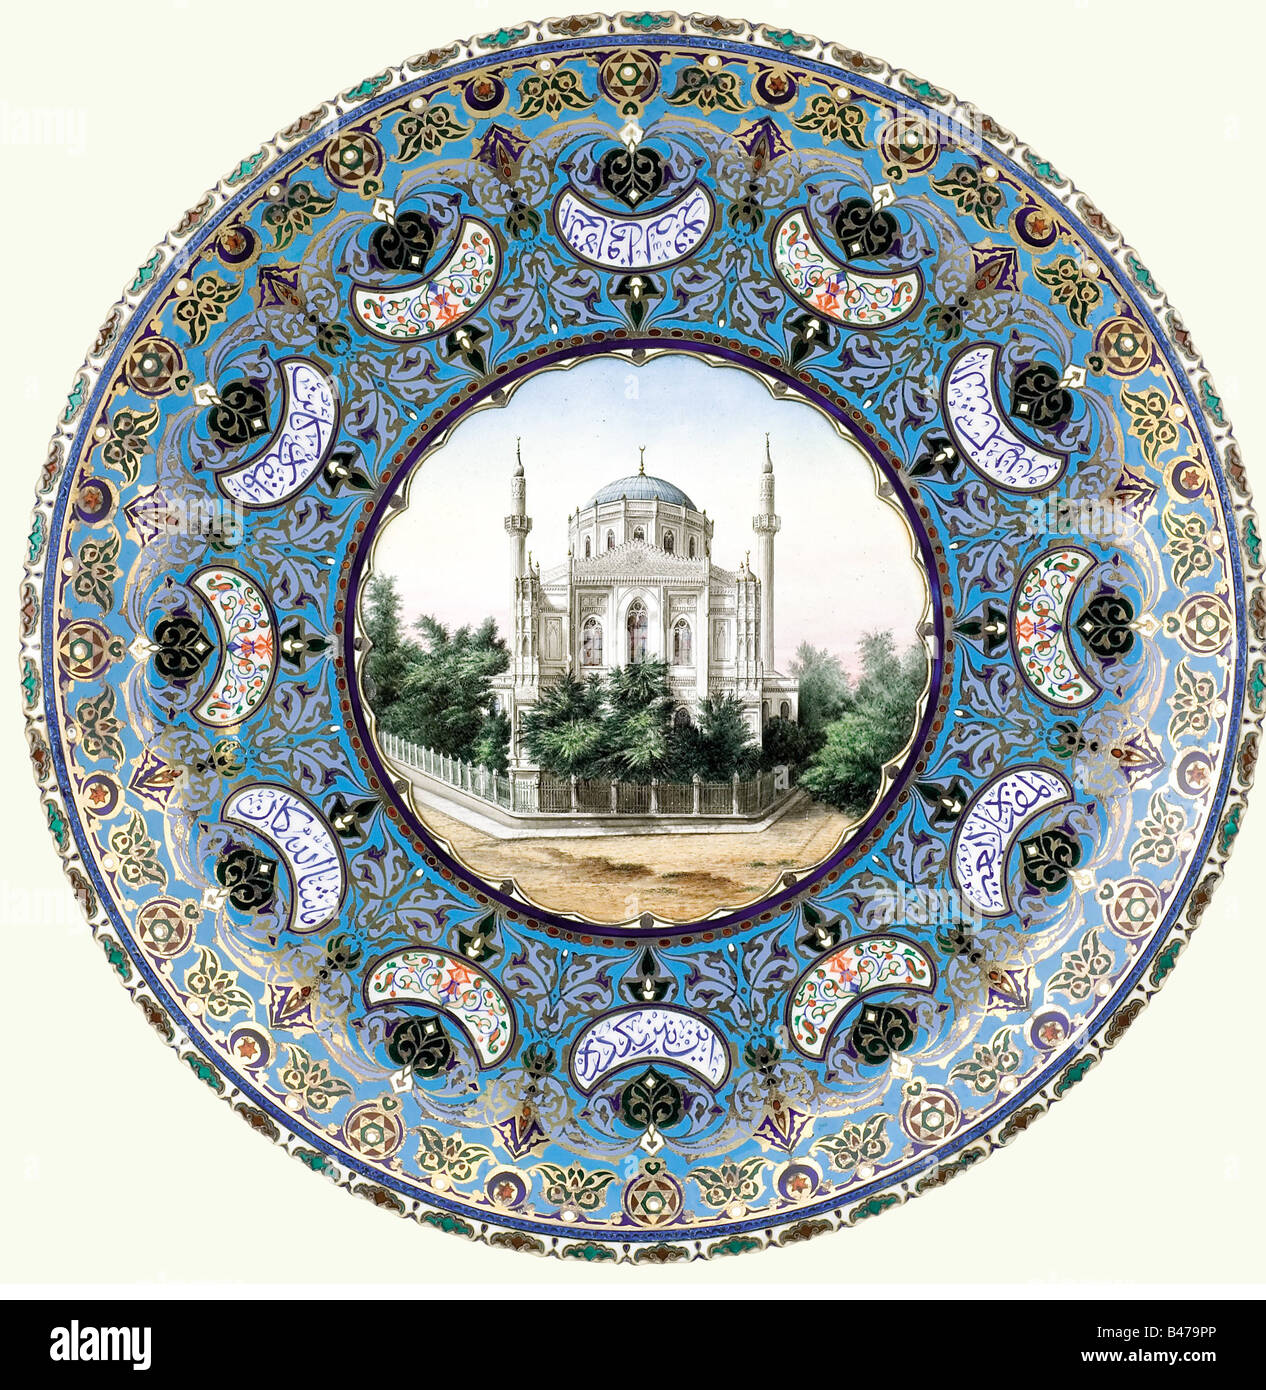 Un plat de lustrware argent ottoman, 1923/1928. Au centre, une représentation peinte à la main de la mosquée de Valide (Valide Camii) dans le quartier d'Aksaray à Istanbul. Bordure dorée en forme de croissant avec inscriptions et fleurs. Sur le doré, inversez trois marques (parmi elles un timbre de contrôle de 1923/28). Diamètre 37,5 cm, poids 1,6 kg. La mosquée de Vaide a été construite en 1871 par l'architecte italien Montani à la suggestion de la femme du Sultan Mahmud II. Historique, historique, 1920, XXe siècle, Empire ottoman, plats, plat, plaque, assiettes, objet, Banque D'Images